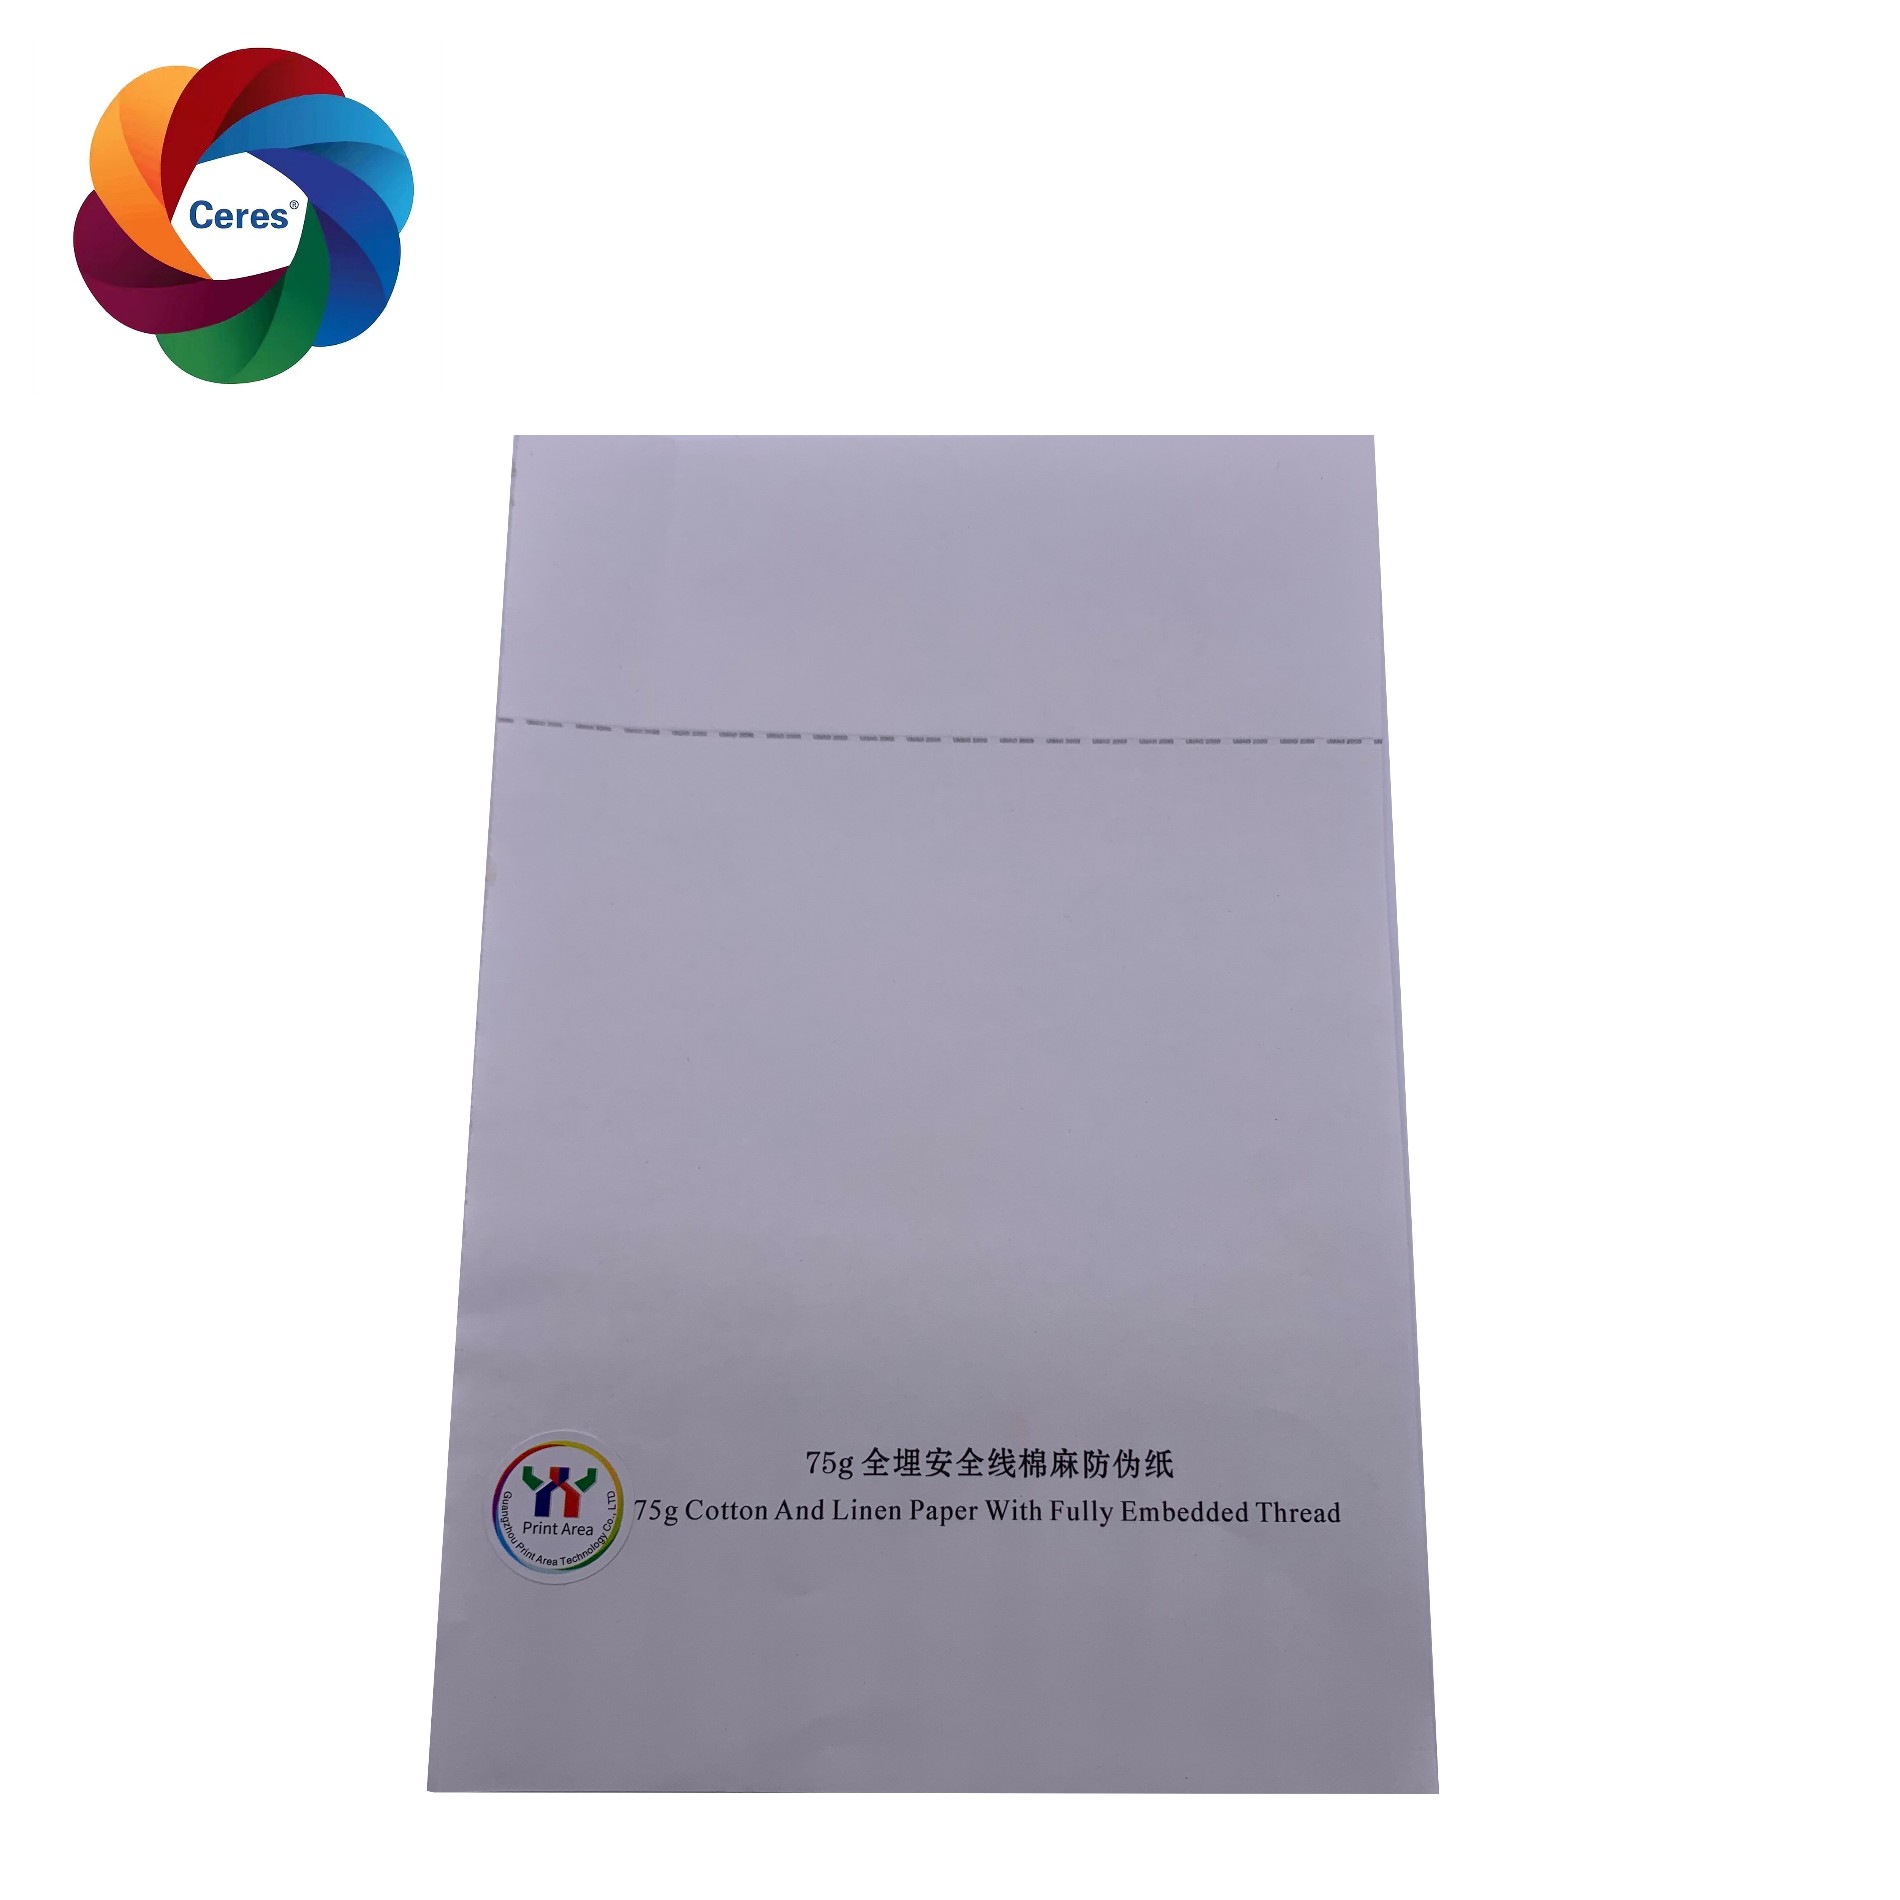 Китай Индивидуальная защитная бумага Цереры с красочным УФ-волокном и линией резьбы, производитель